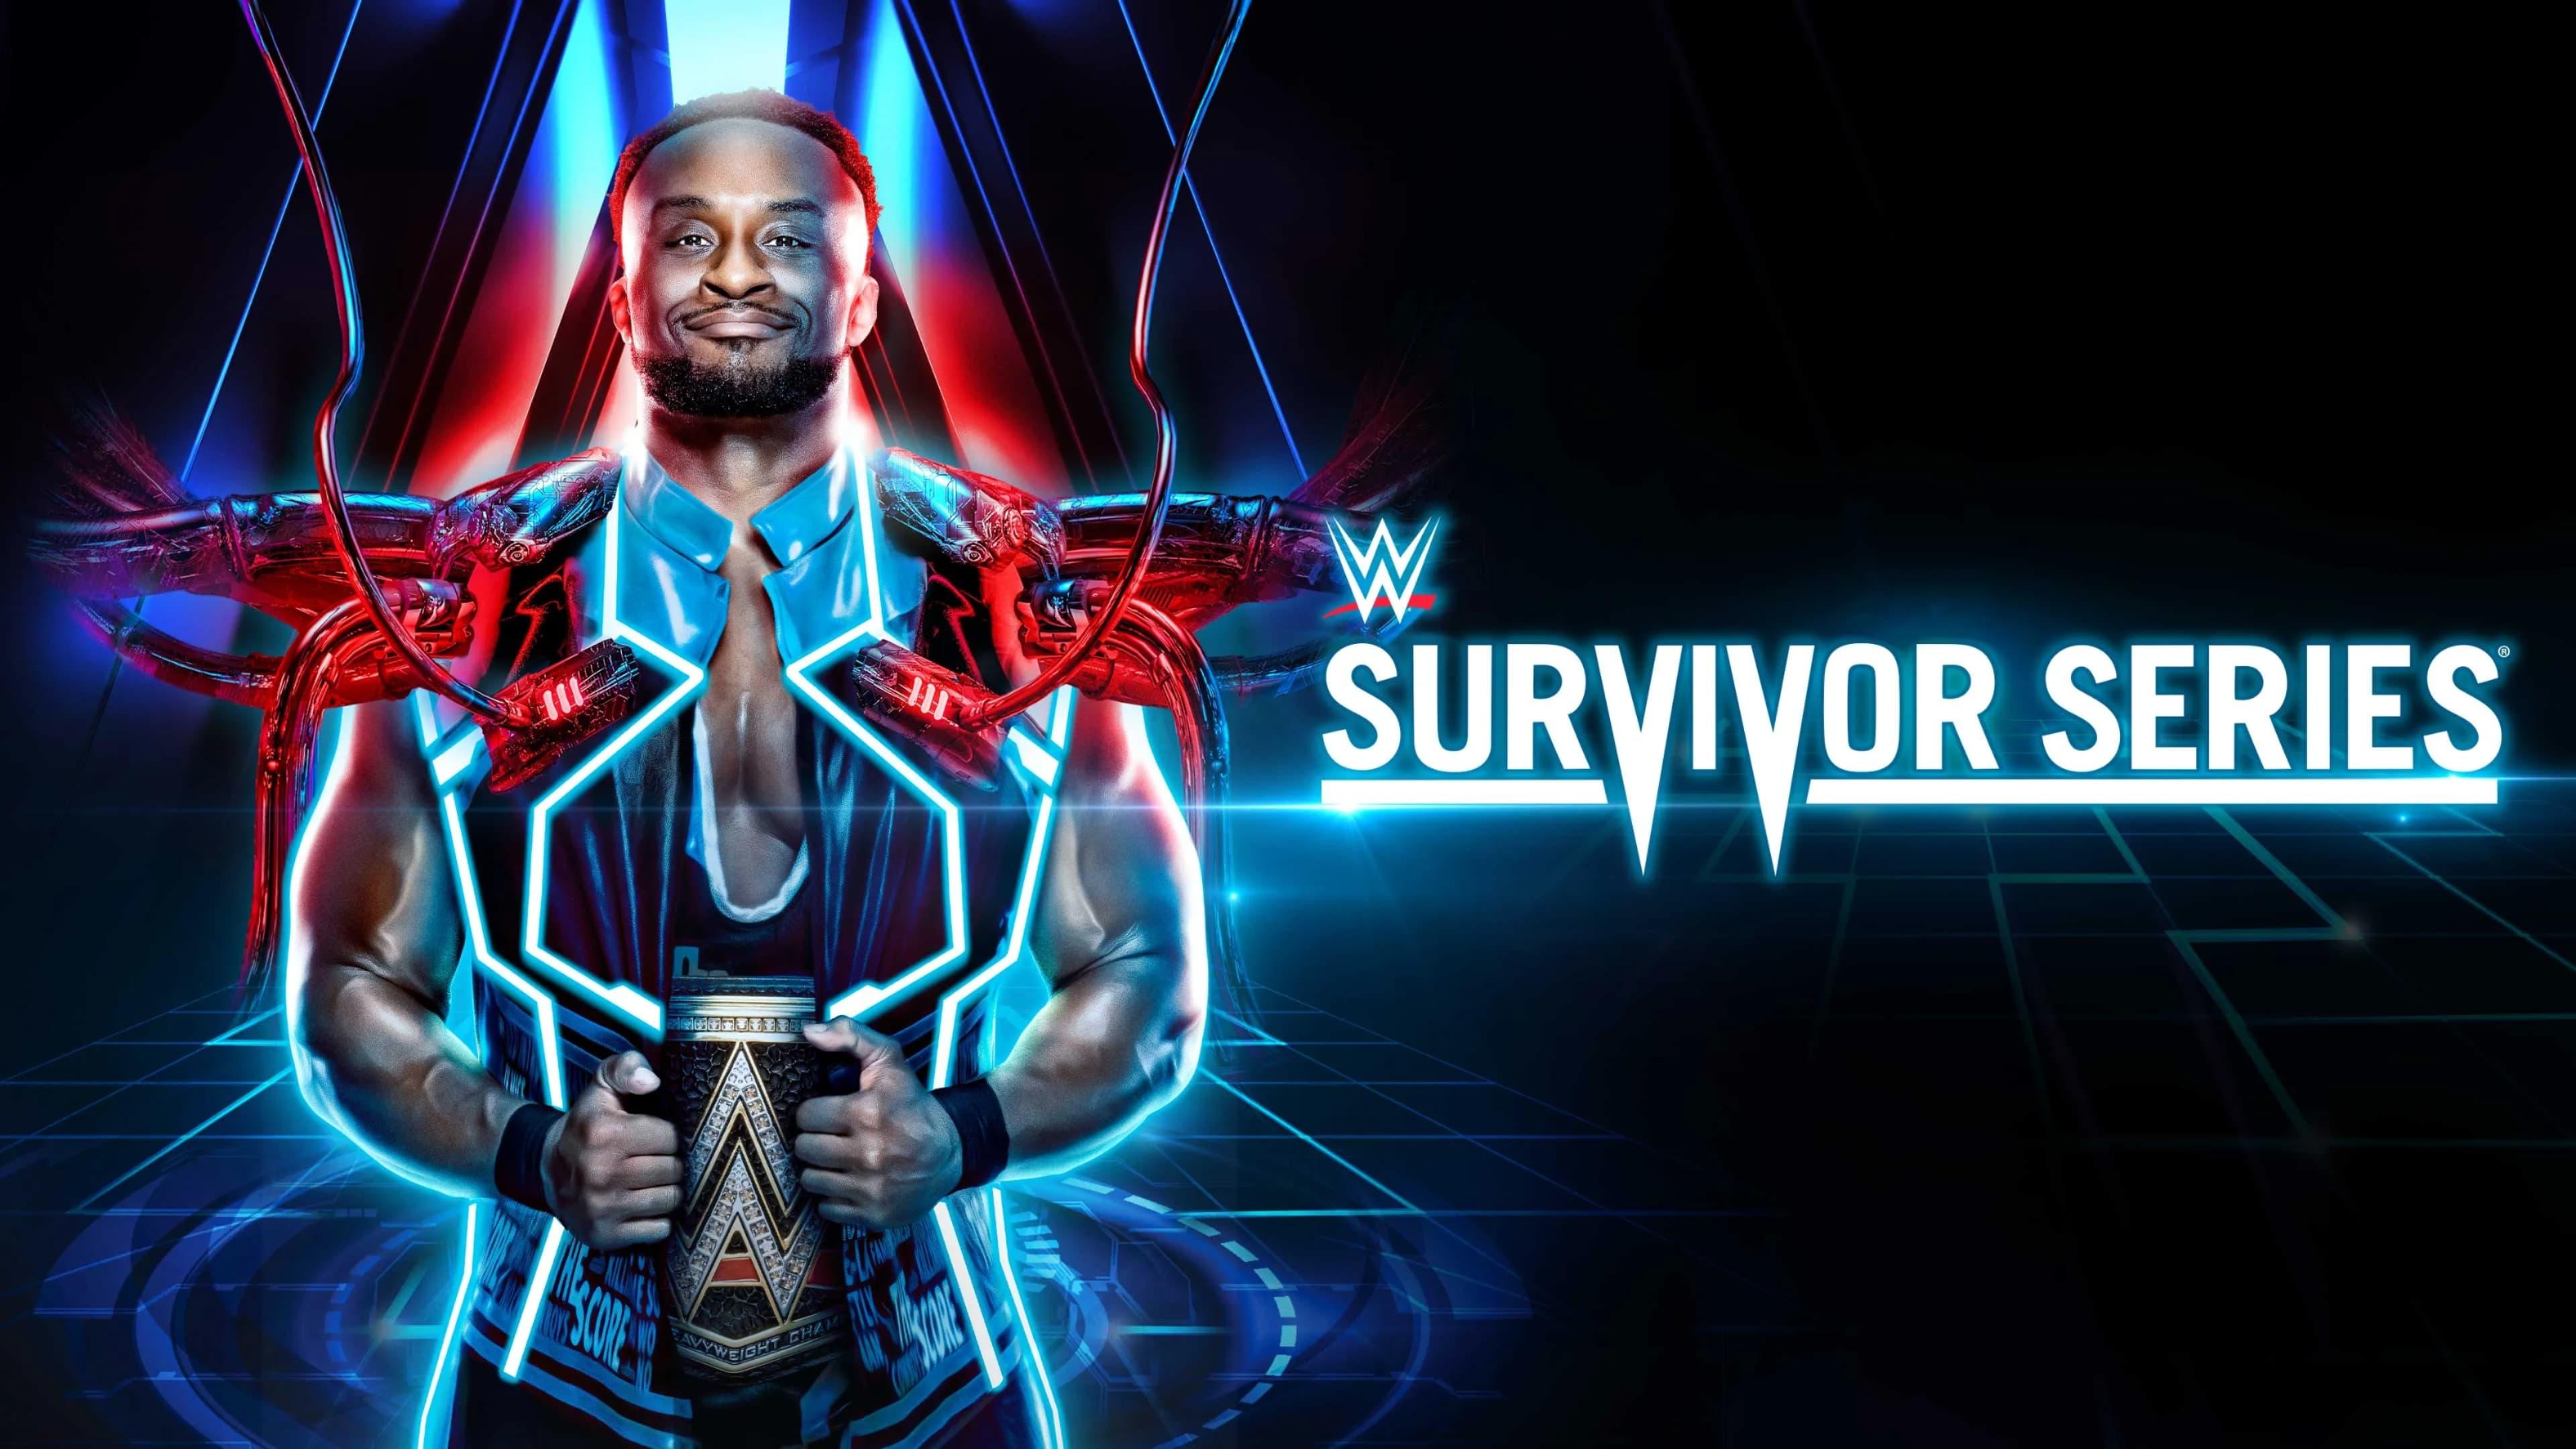 WWE Survivor Series 2021 backdrop